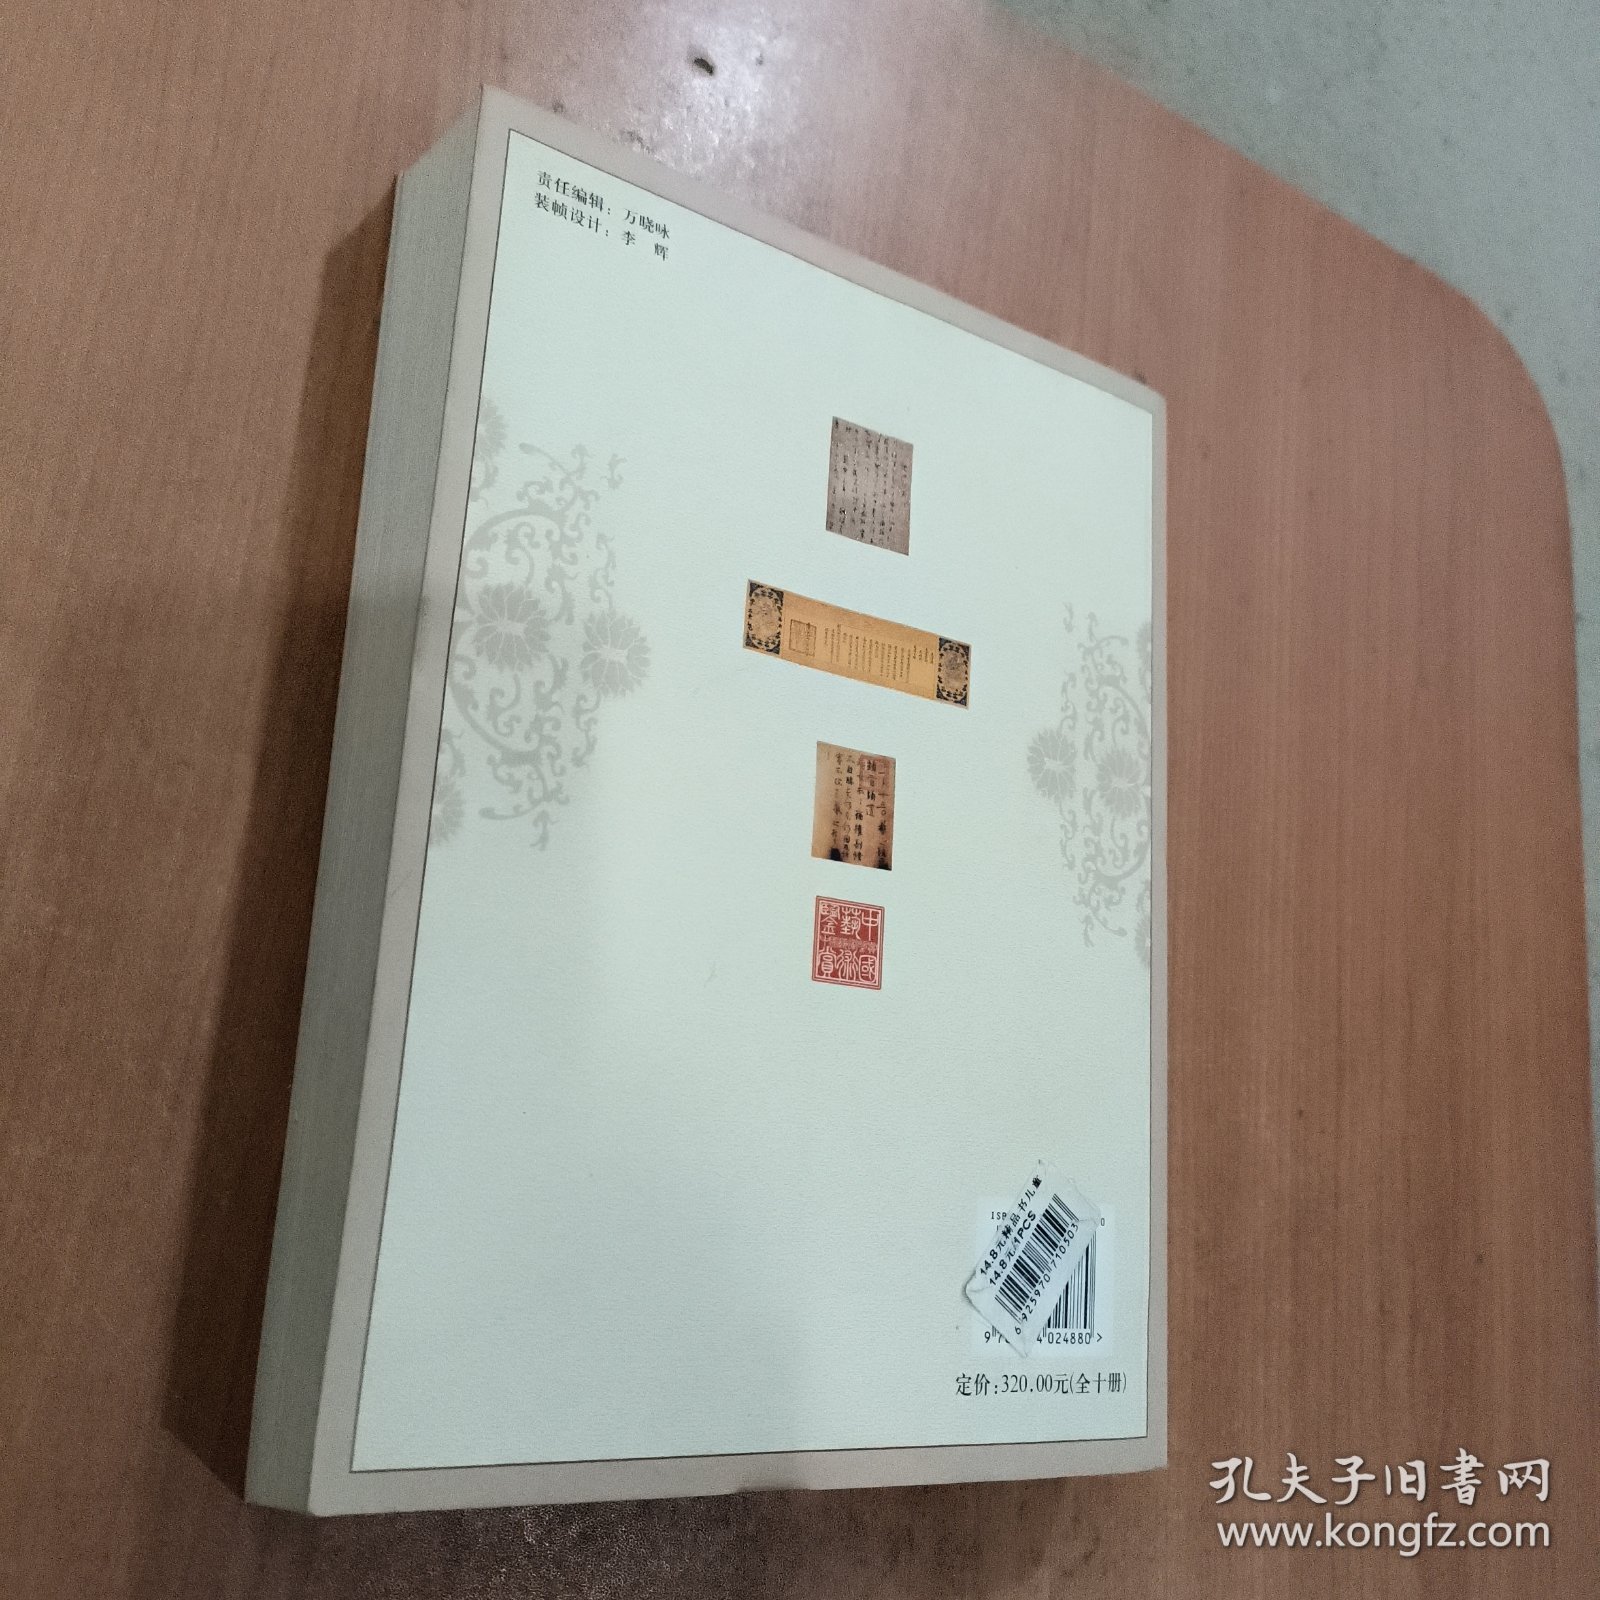 中国书法艺术鉴赏